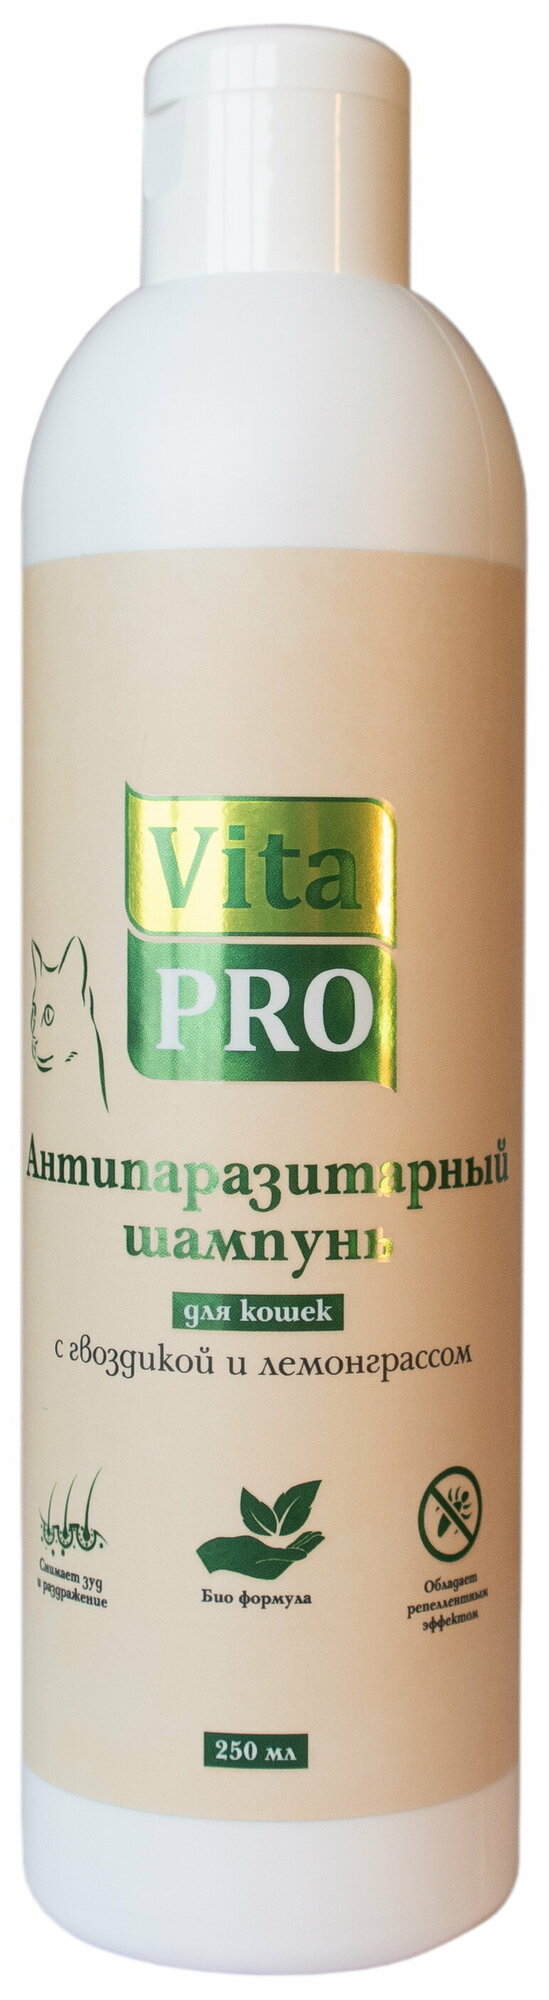 Vita Pro 250 мл биошампунь для кошек антипаразитарный с гвоздикой и лемонграссом